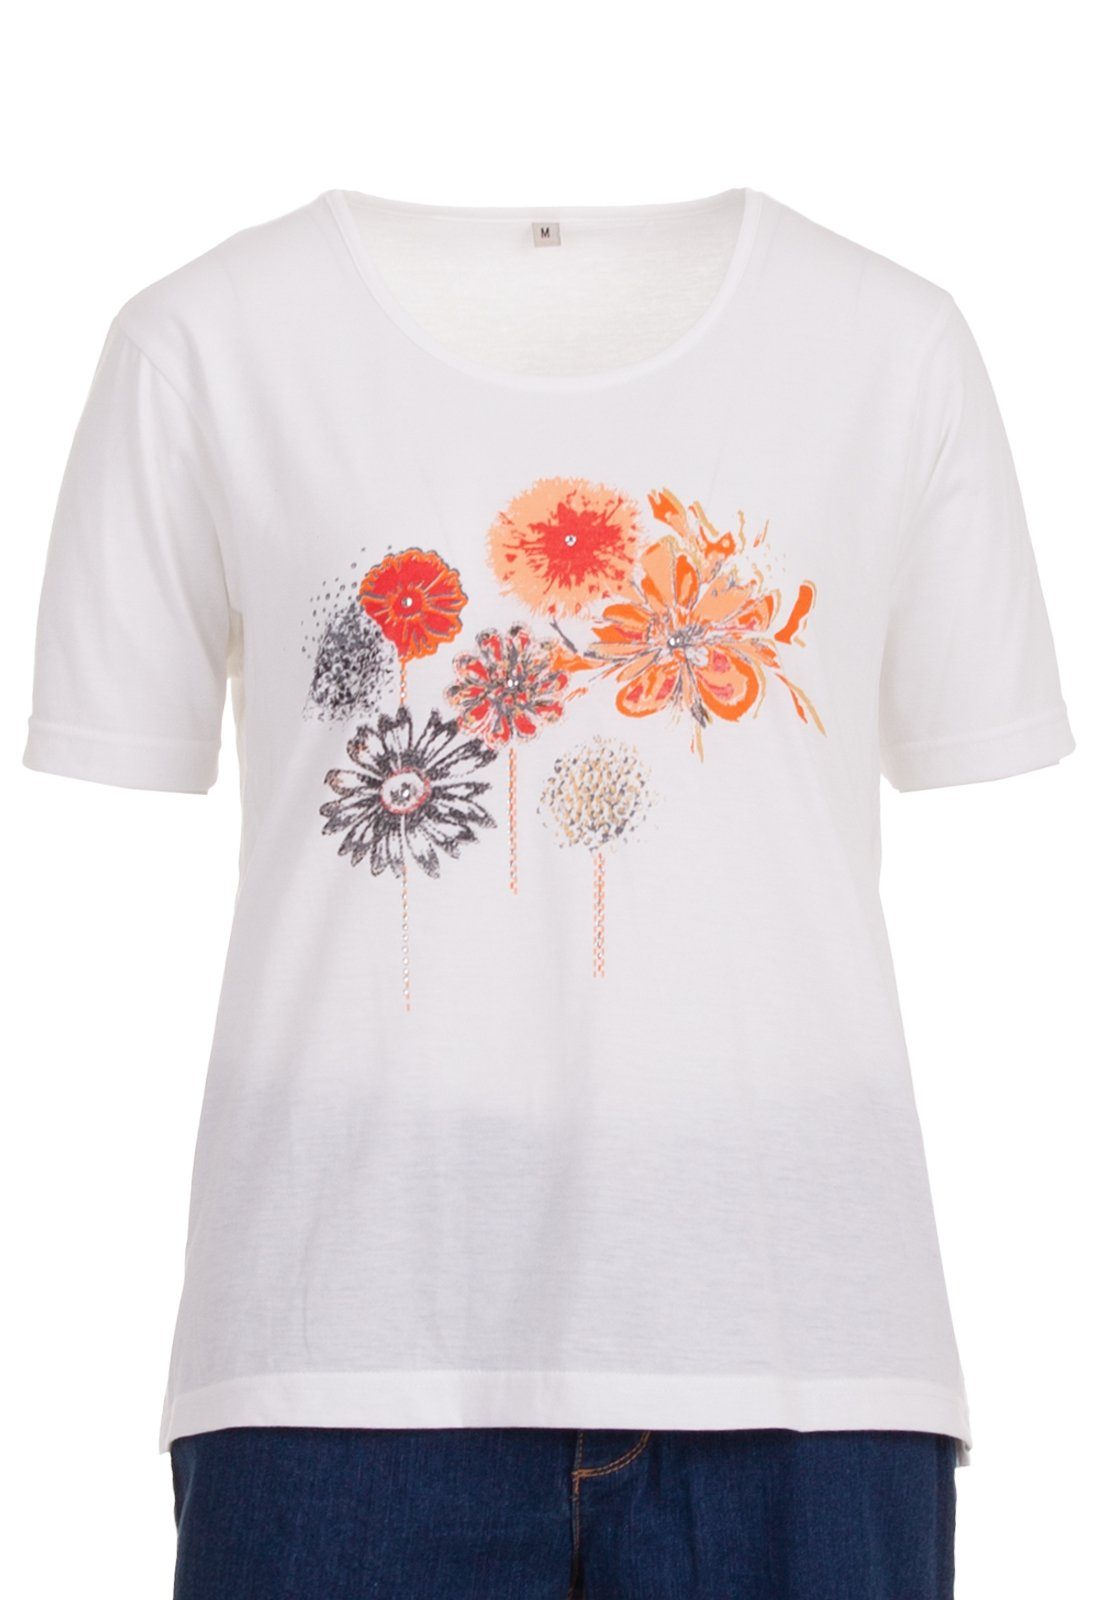 T-Shirt weiß Blume zeitlos T-Shirt Kurzarm Stein Applikation Rundhals zeitlos